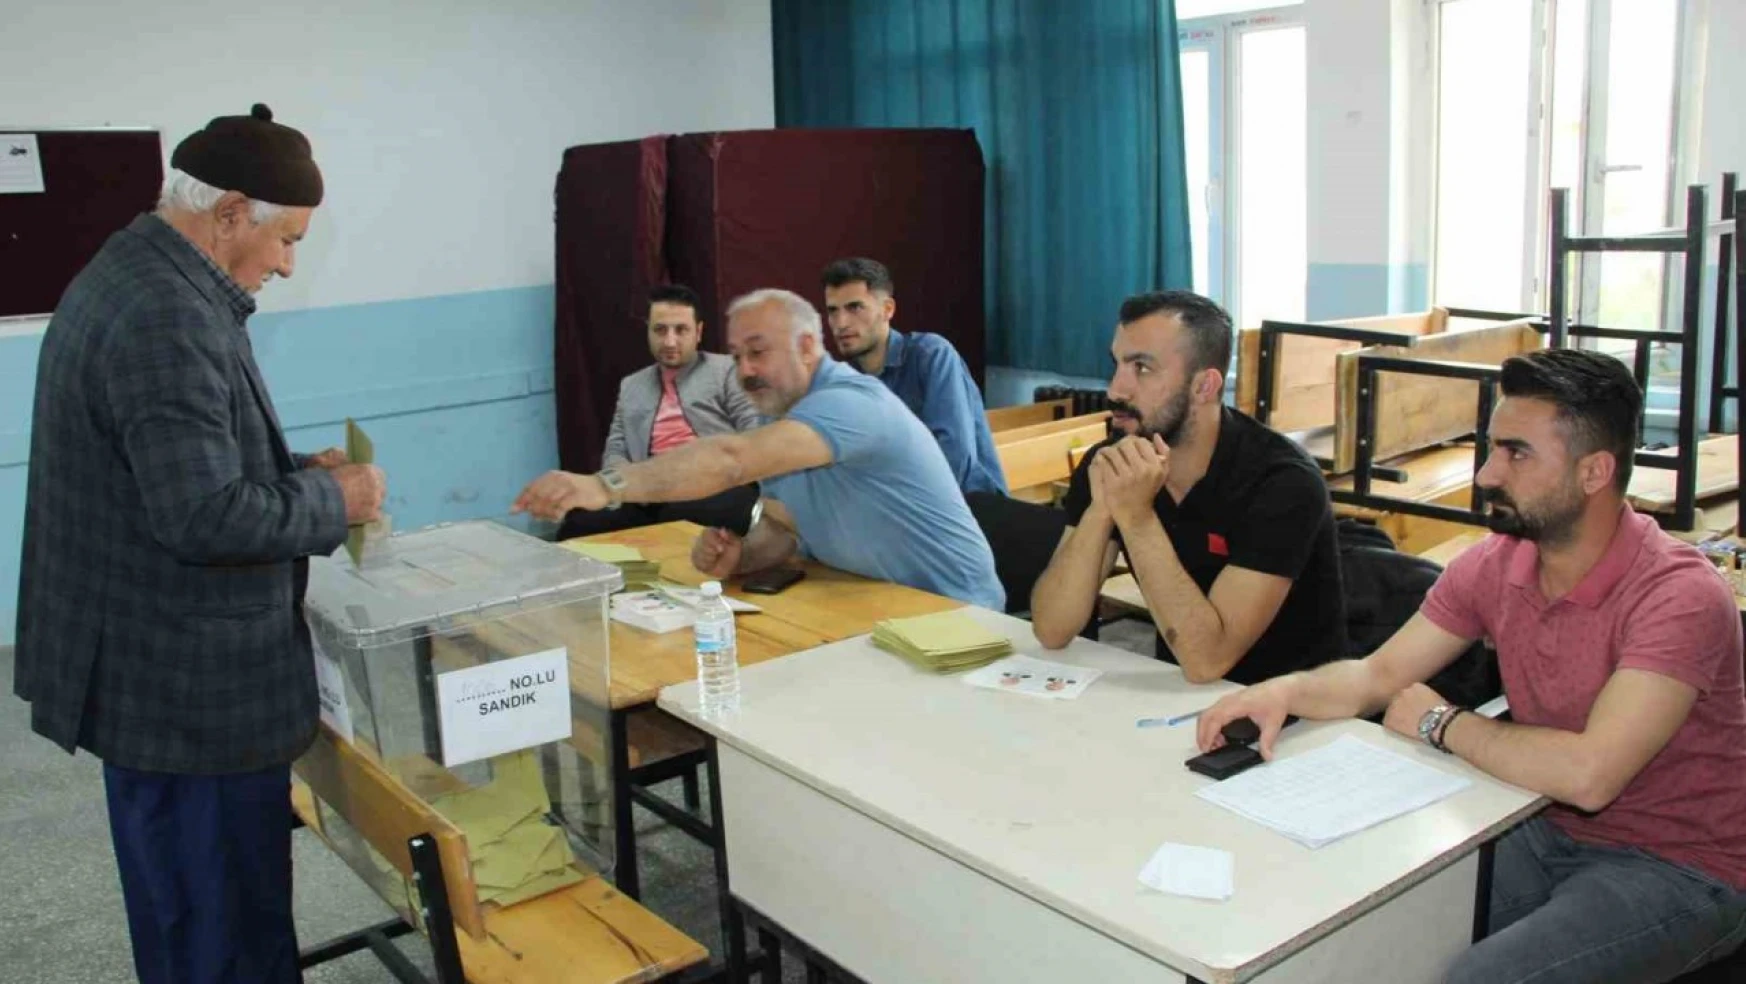 Şırnak'ta 324 bin seçmen oy kullanıyor